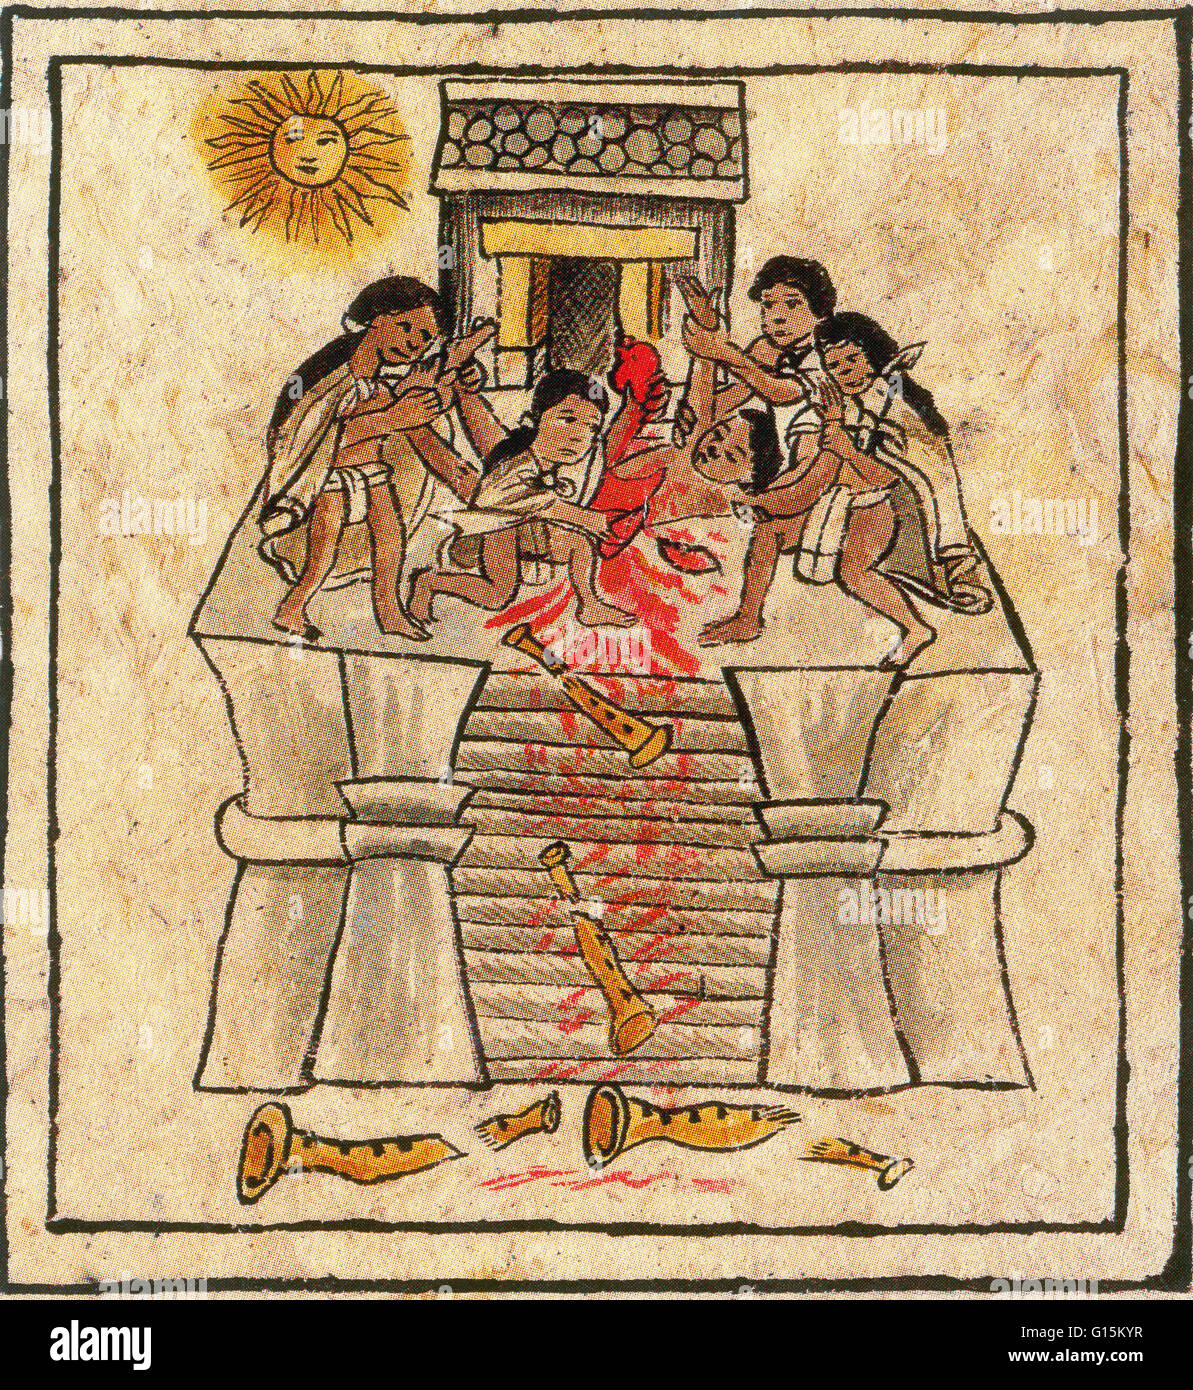 El sacrificio humano era una práctica religiosa característica de la civilización azteca precolombina, así como de otras civilizaciones mesoamericanas como los mayas y los zapotecos. Los Aztecas tenía 18 meses en un ciclo, y para cada uno de los 18 meses, hubo ri Foto de stock